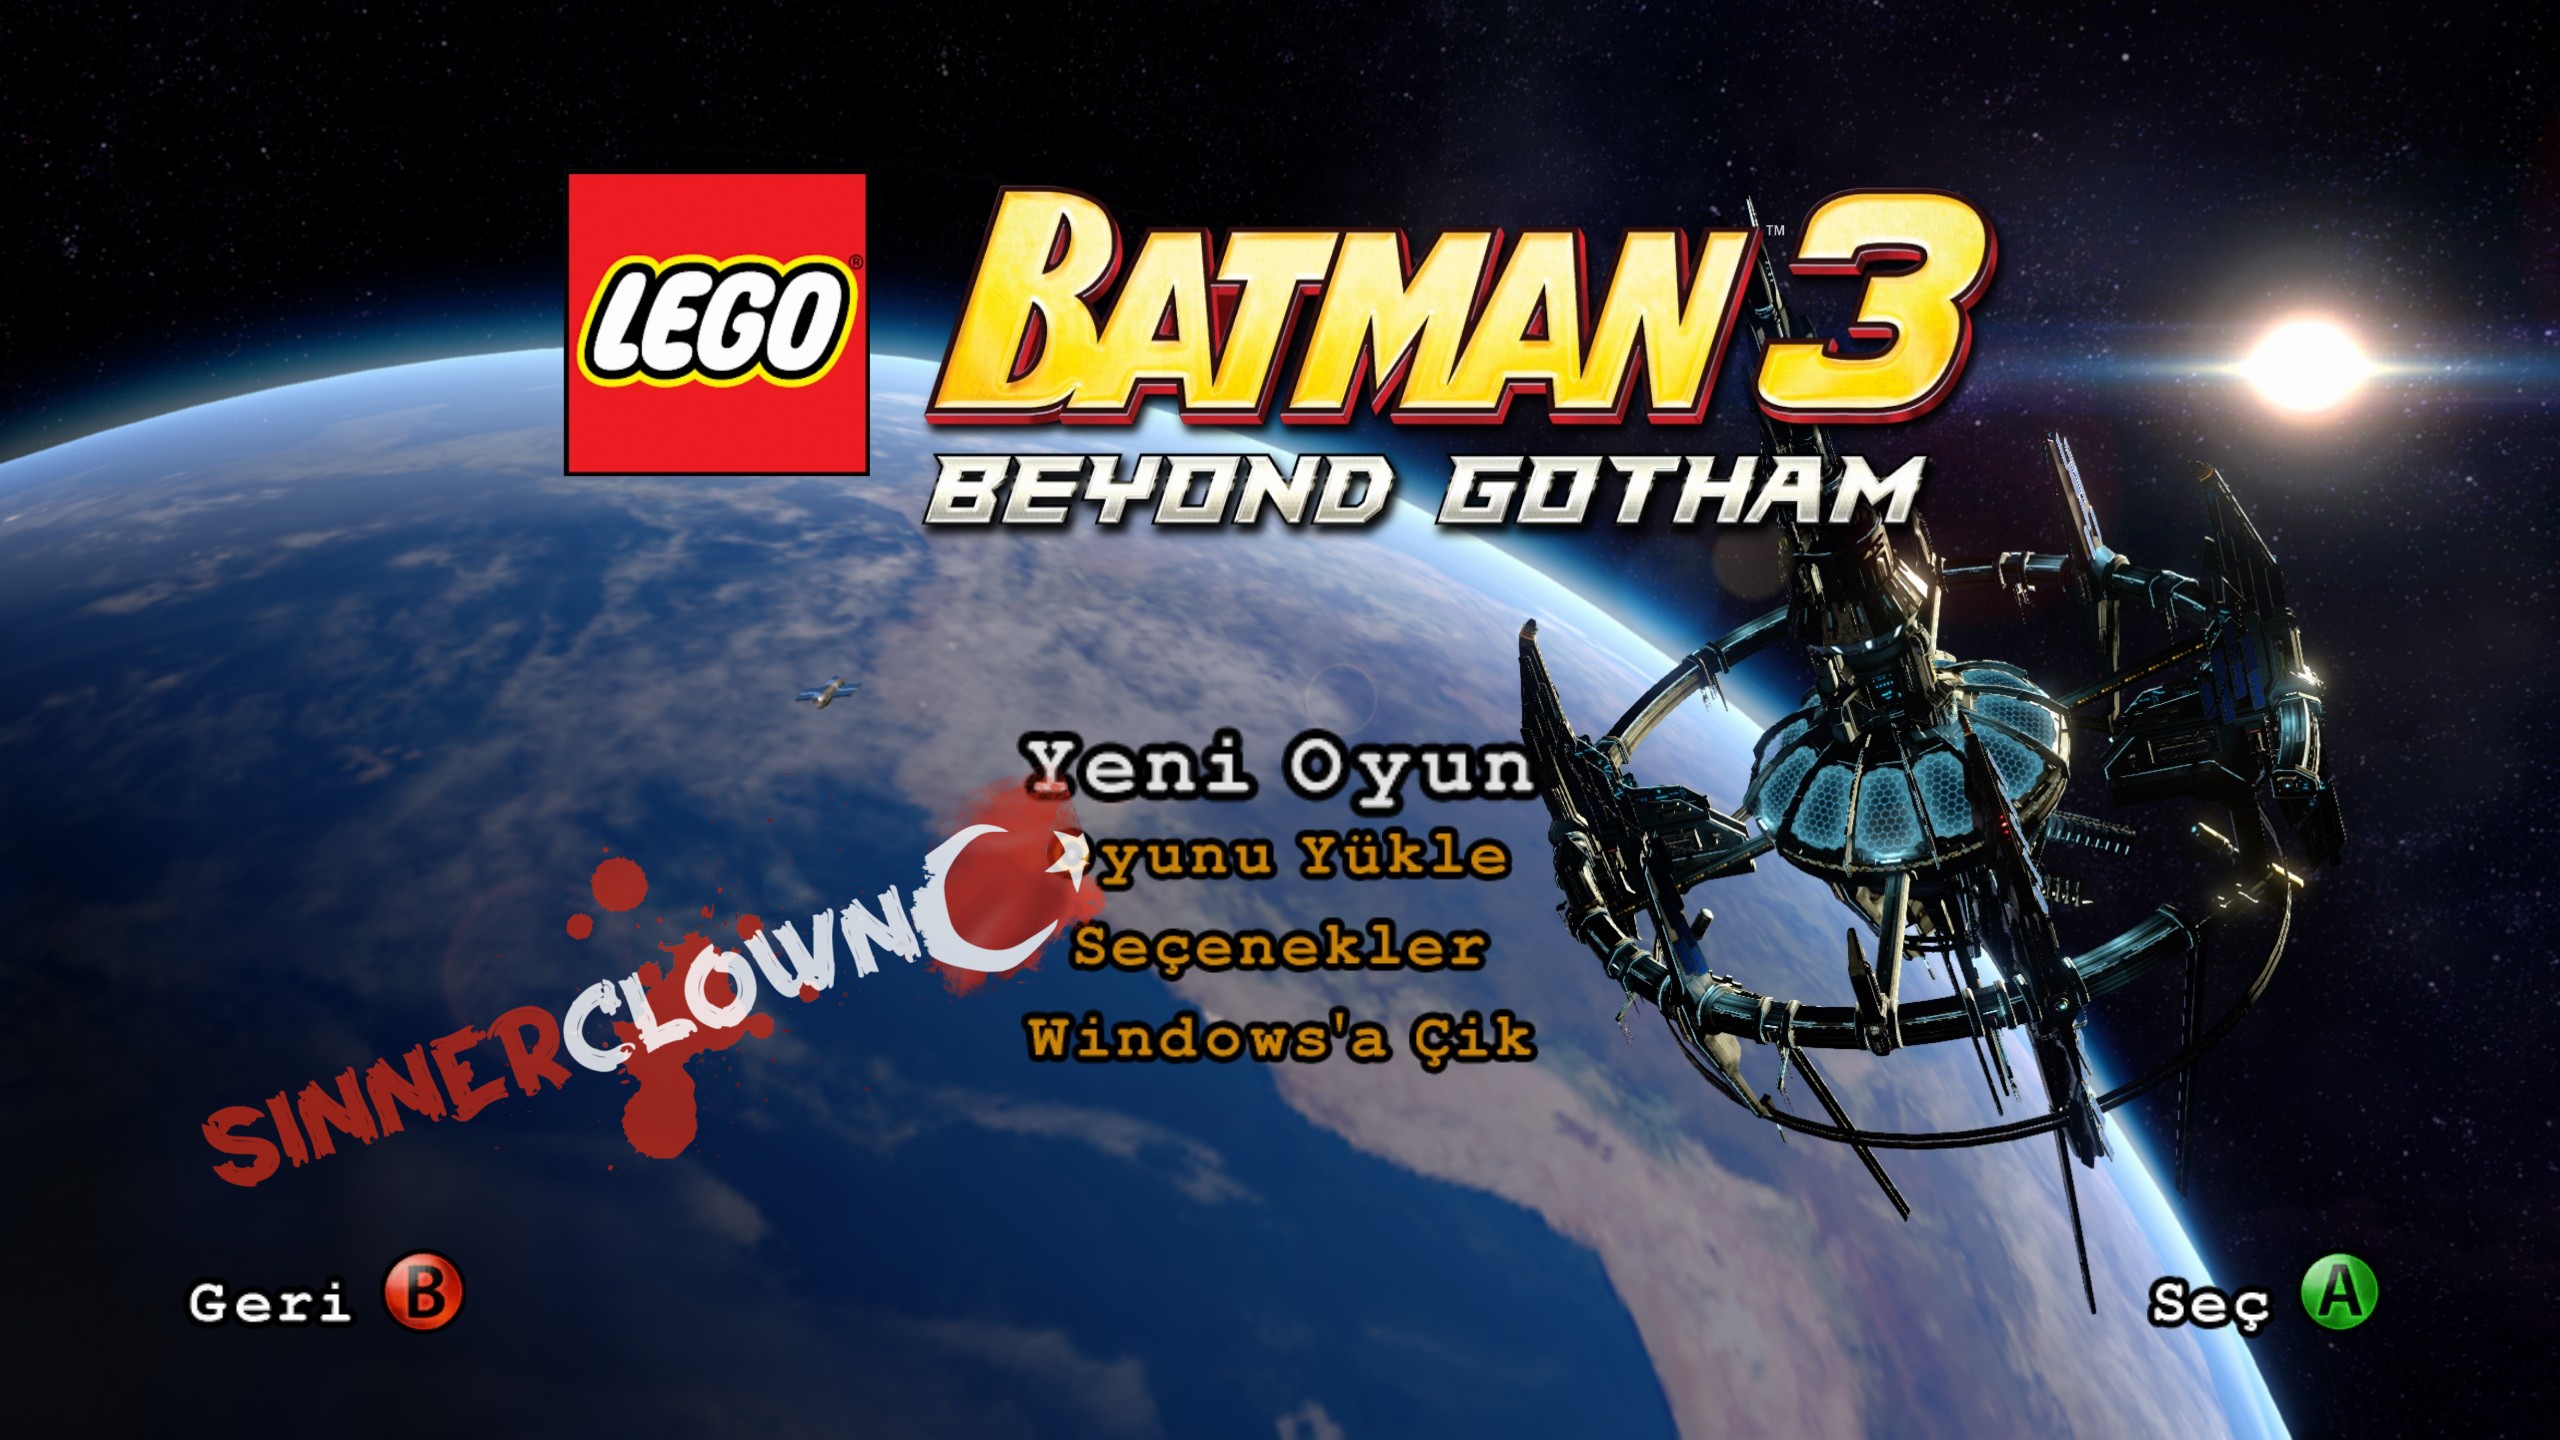 LEGO_Batman3_1.jpg